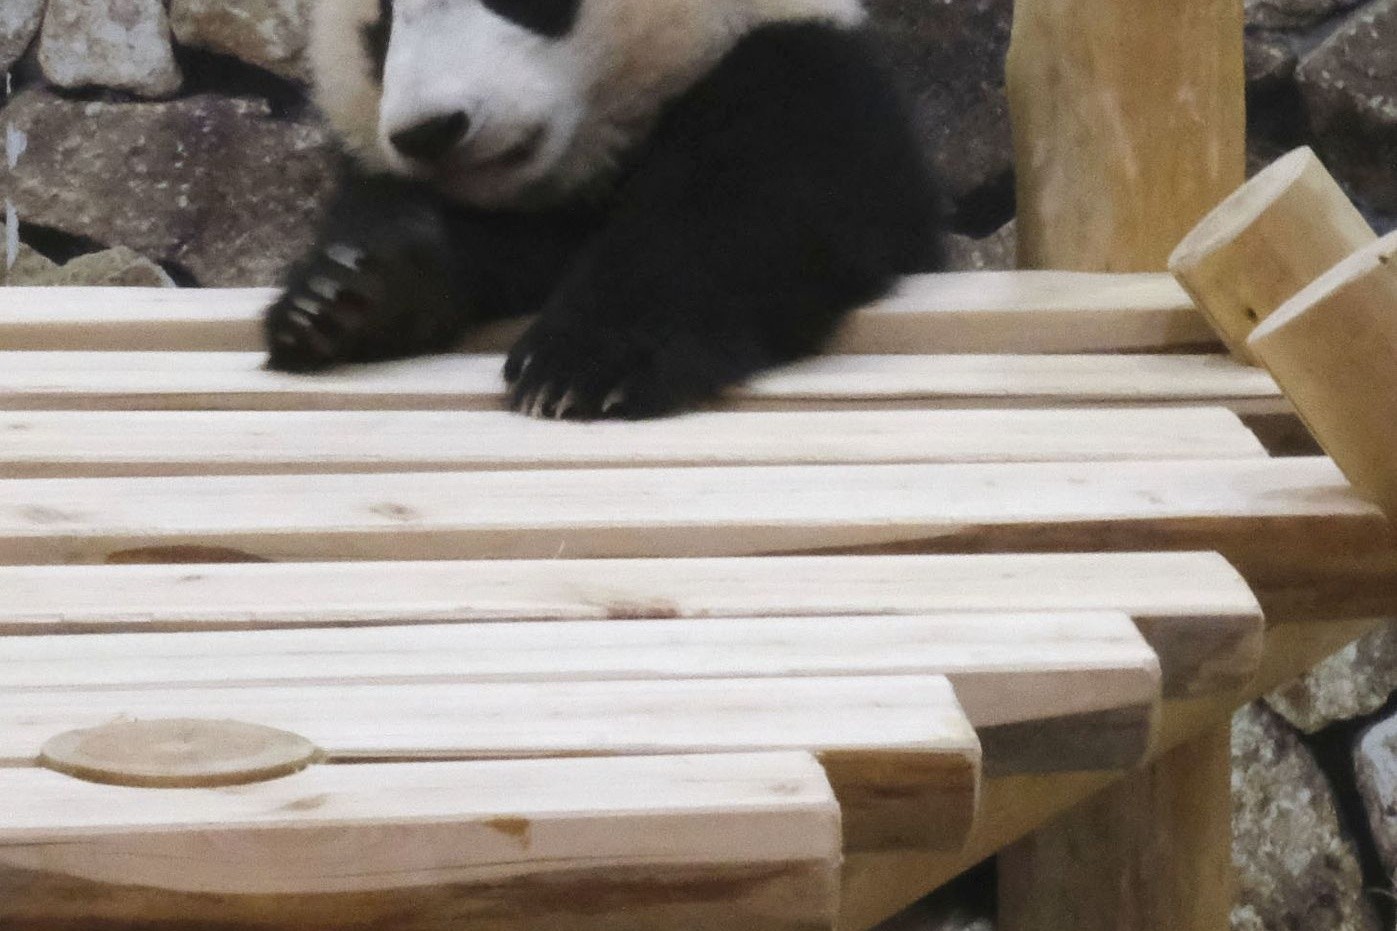 Japaner lieben Pandas - nach der Geburt von Panda-Zwillingen in einem Tokioter Zoo wird nun mit einem Besucherandrang gerechnet. (Symbolbild)